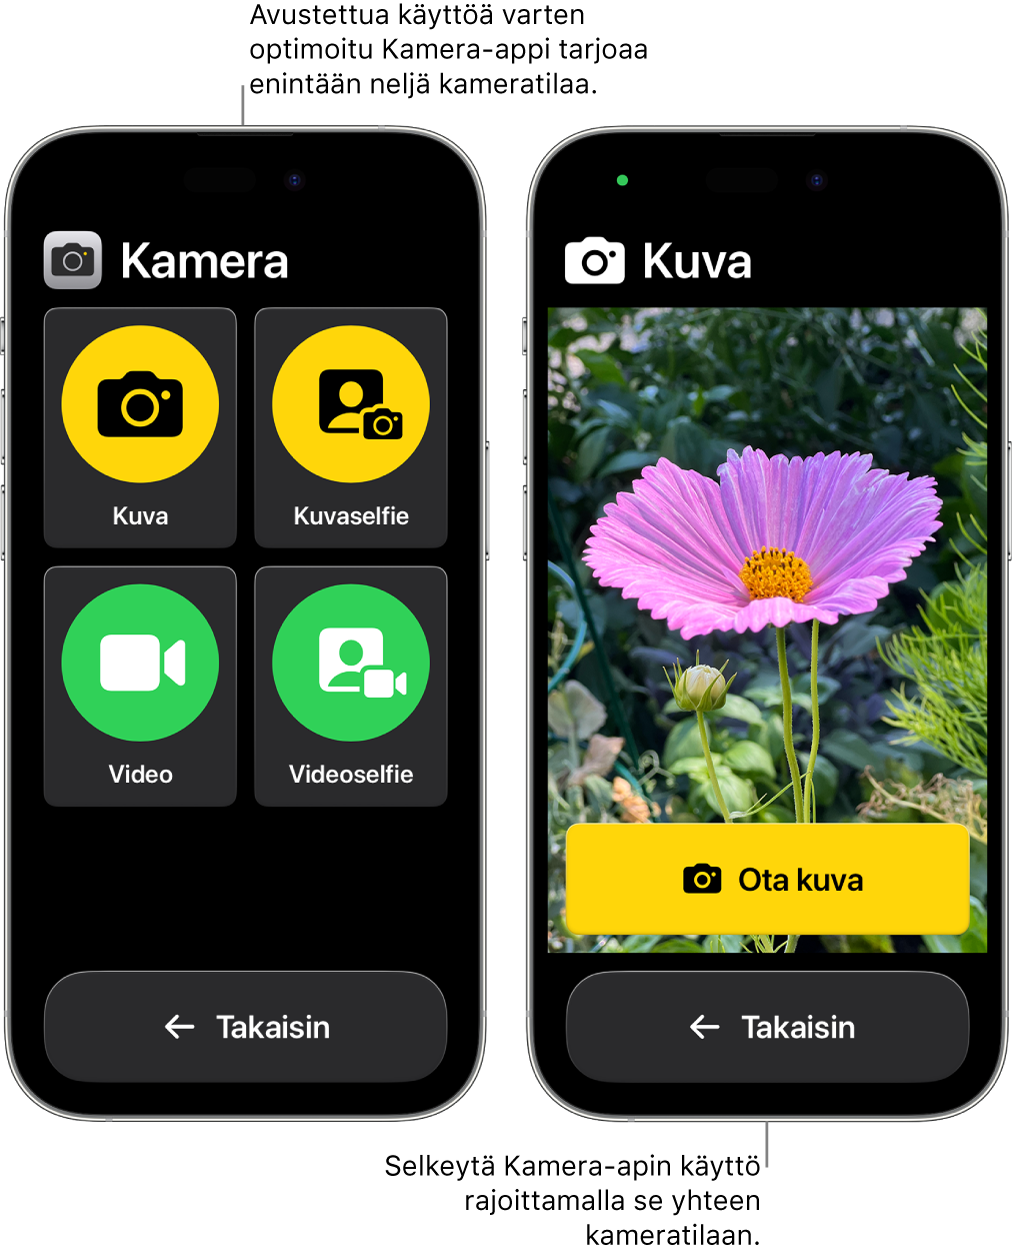 Kaksi iPhonea, joissa on päällä avustettu käyttö. Toisessa iPhonessa on näkyvissä Kamera-appi ja eri kameratilat, joista käyttäjä voi valita, kuten Video- tai Kuvaselfie. Toisessa iPhonessa on näkyvissä Kamera-appi, jossa on yksi tila kuvien ottamista varten.